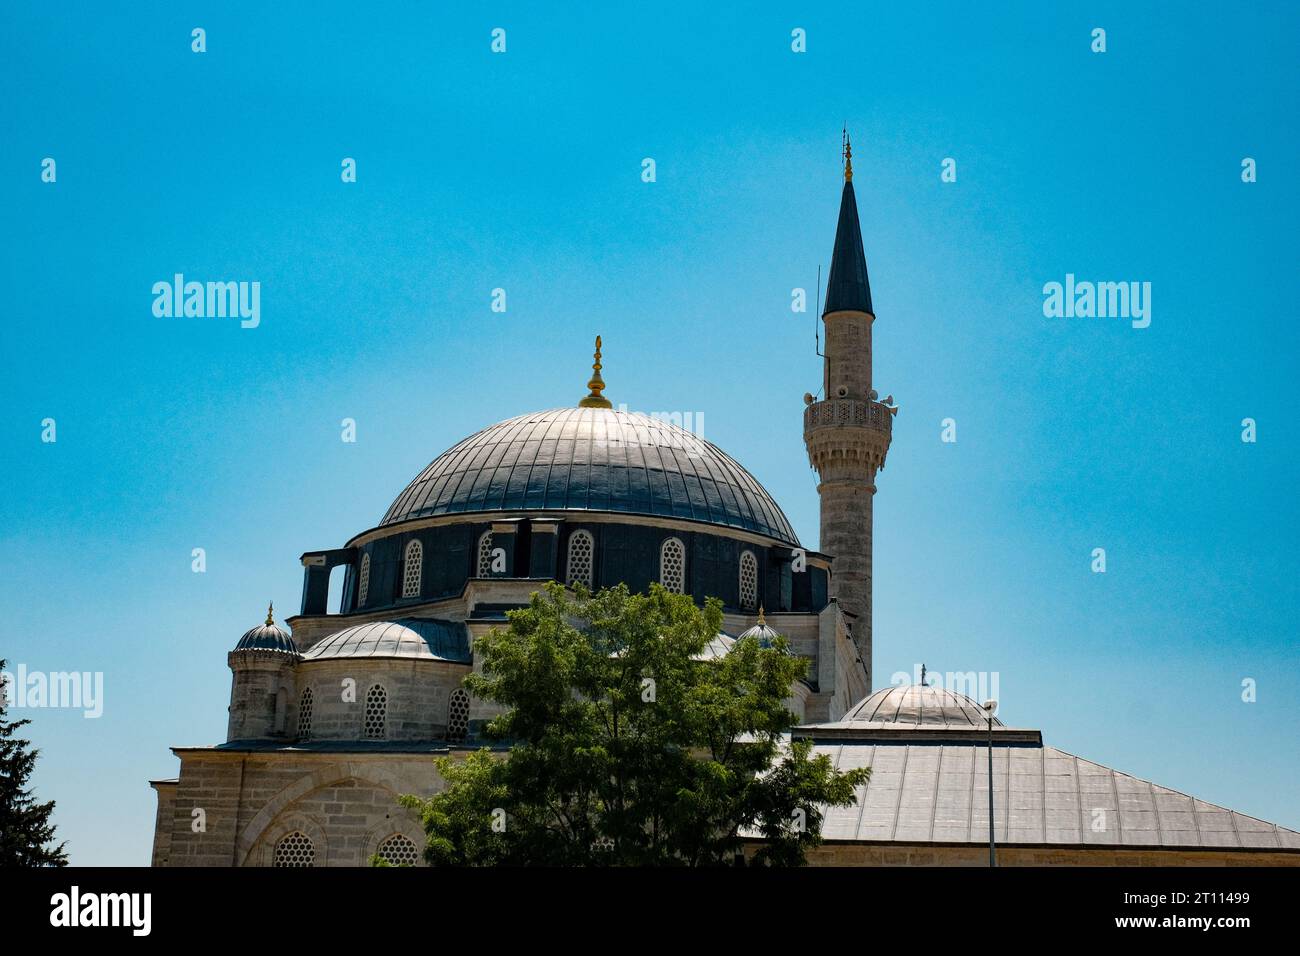 Une mosquée turque traditionnelle, avec sa silhouette élégante clairement définie contre le ciel, crée une scène captivante à fort contraste. Banque D'Images